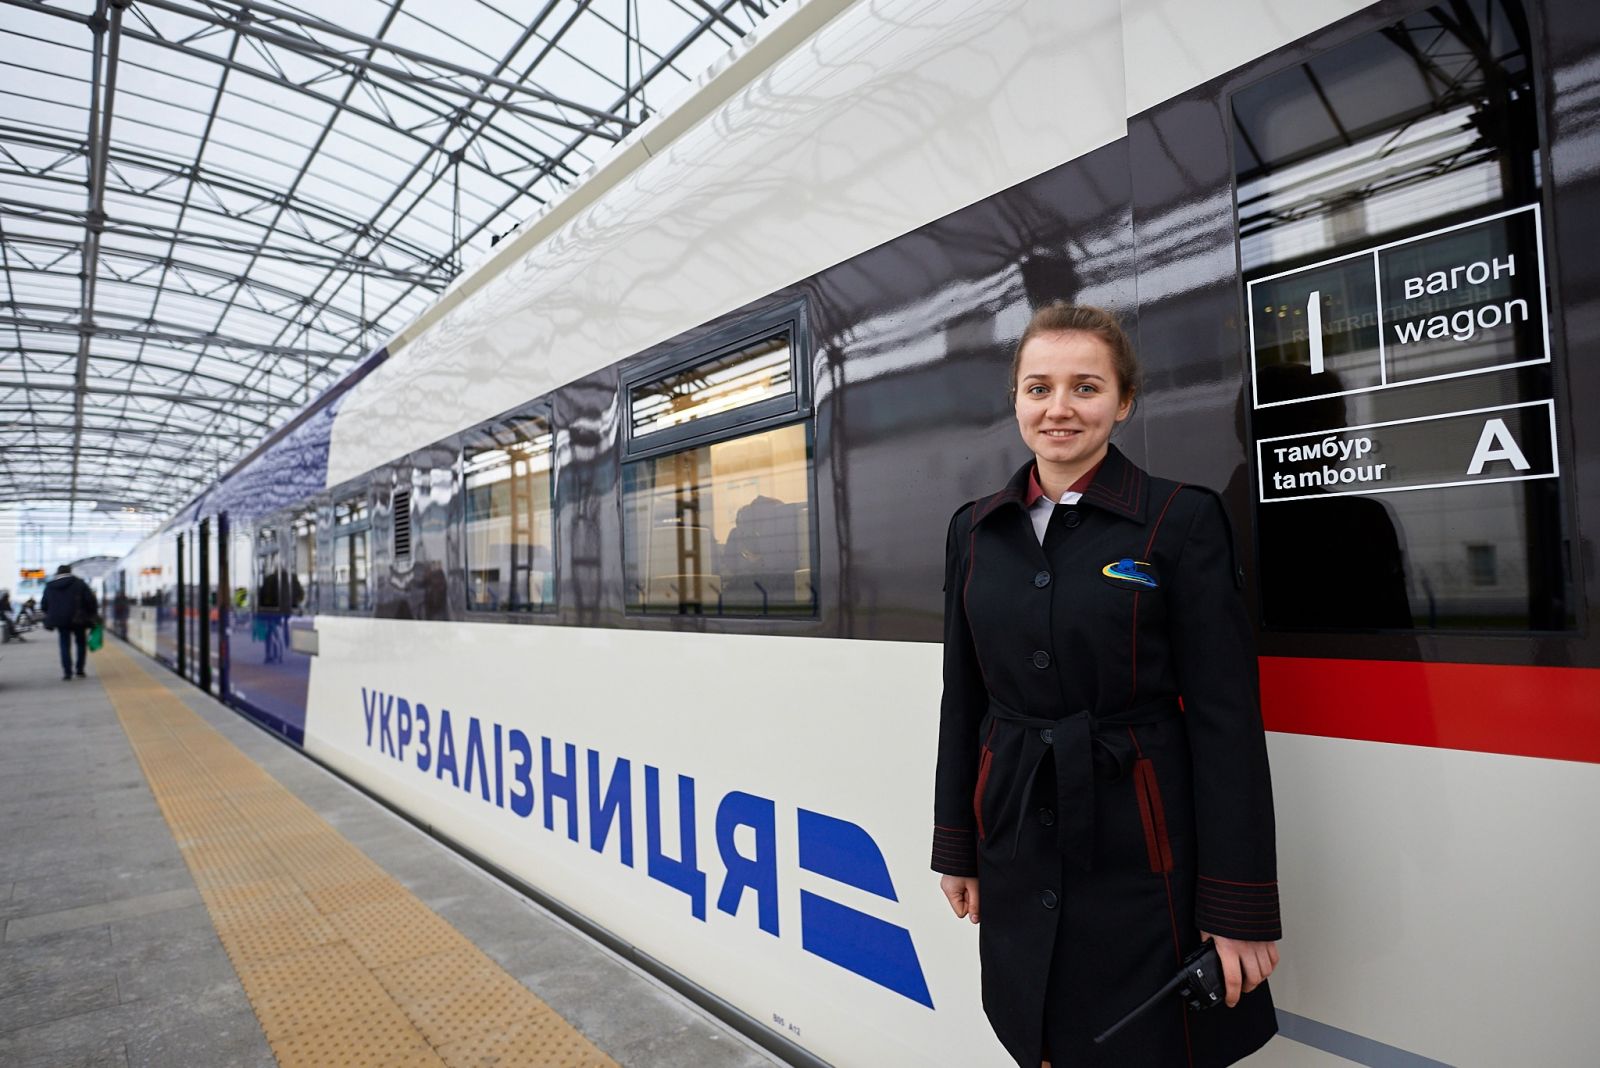 Авіаекспрес Київ — Бориспіль обслуговуватиме новий український поїзд, фото — "Укрзалізниця"